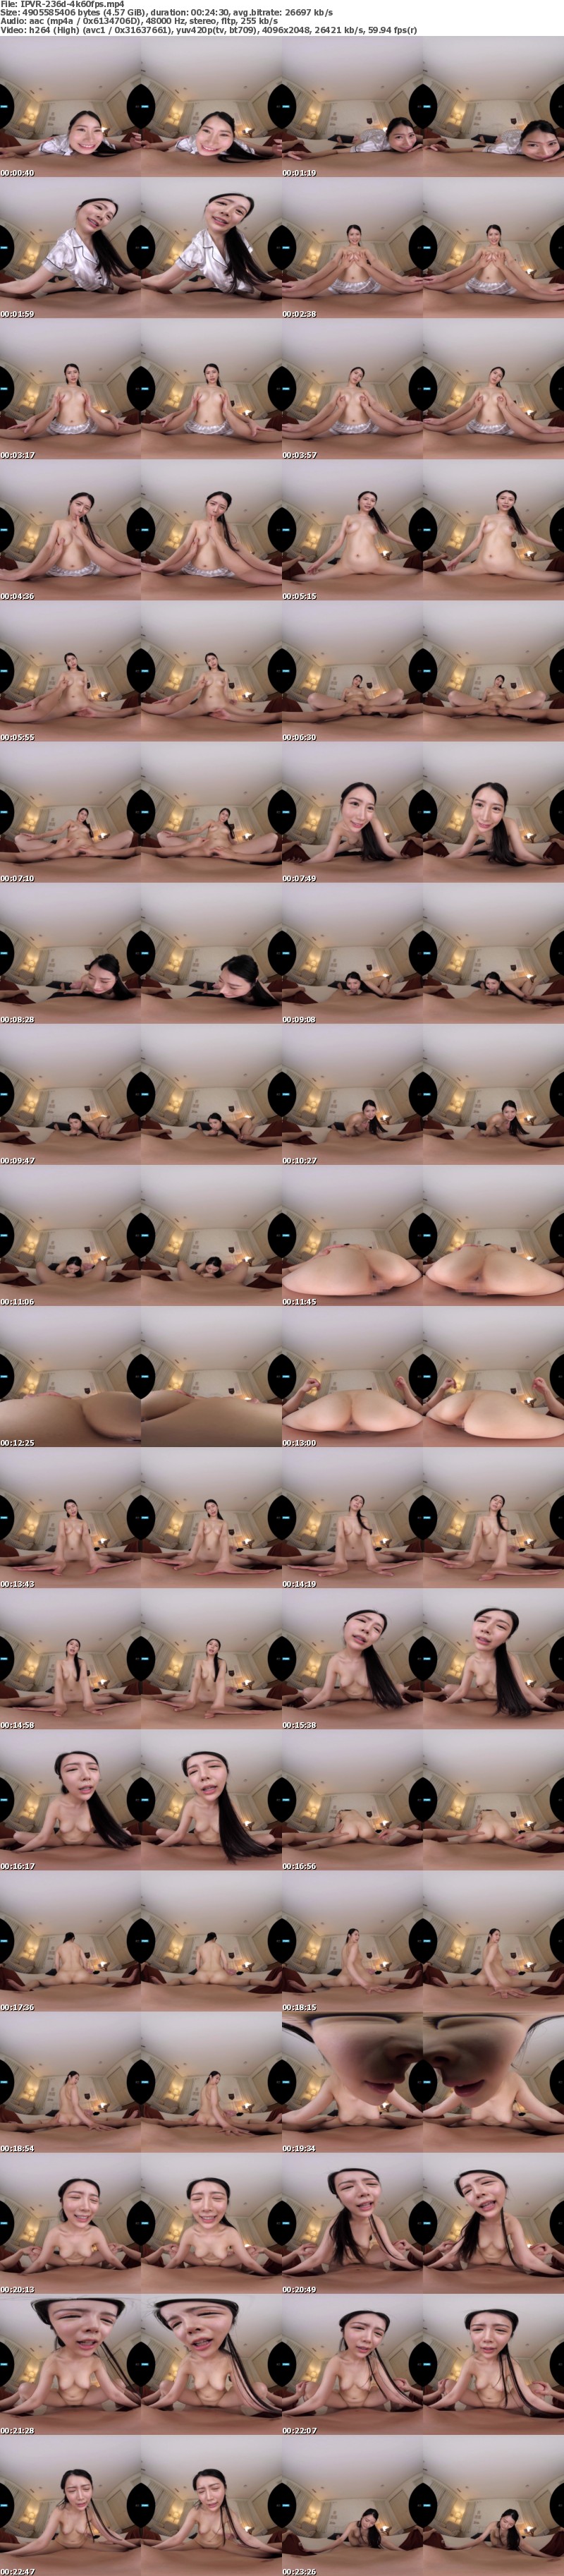 [VR] IPVR-236 【VR】【朝日りお初VR】長尺121分 2SEX 4コーナー！！ キスしまくりおっぱい舐めまくりち○ぽいじられ放題！朝から晩までイチャハメ神同棲